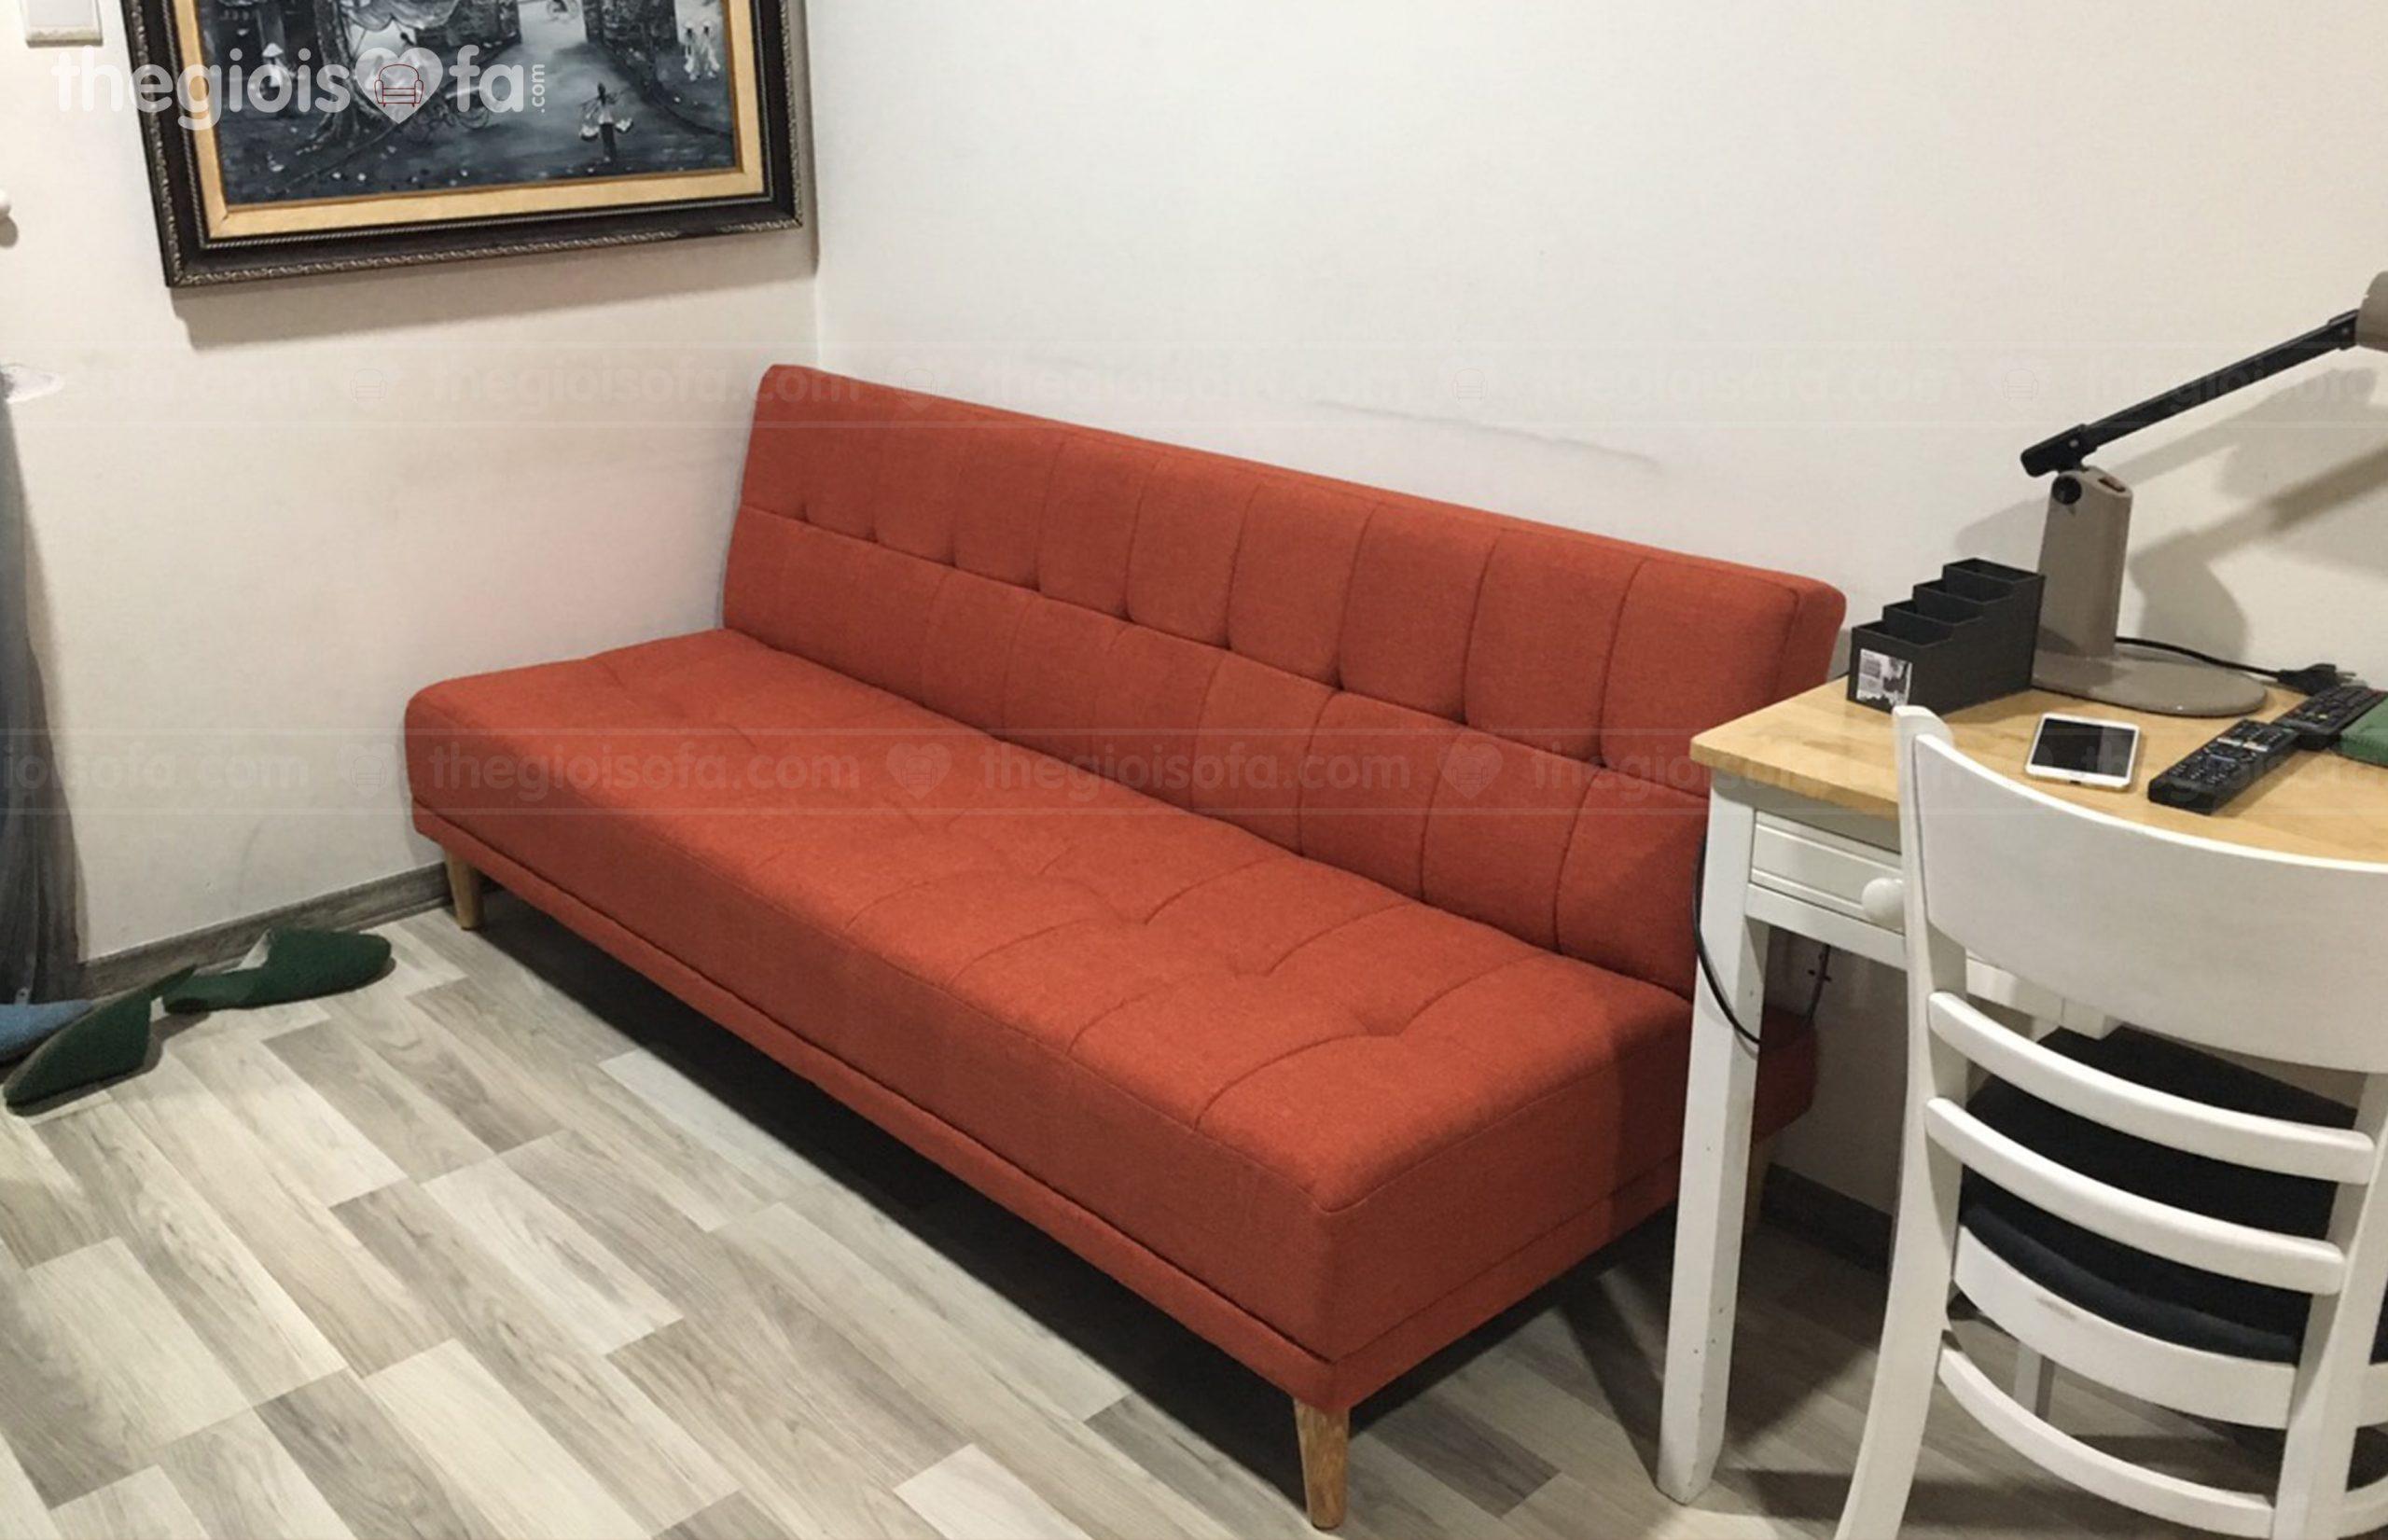 Giao hàng sofa giường cao cấp màu cam Sofaland vera cho chị Quyên tại Seasons Avenue – Mua sofa Quận Hà Đông